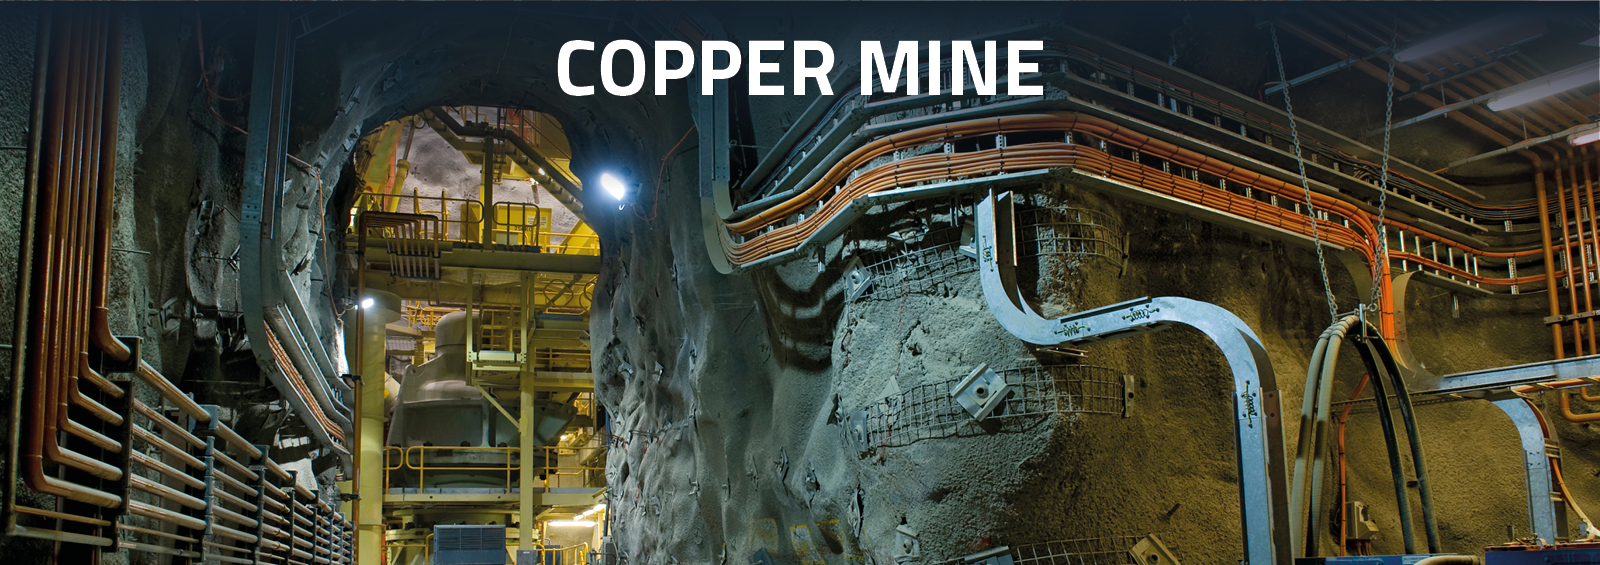 fibox_copper_mine[1]